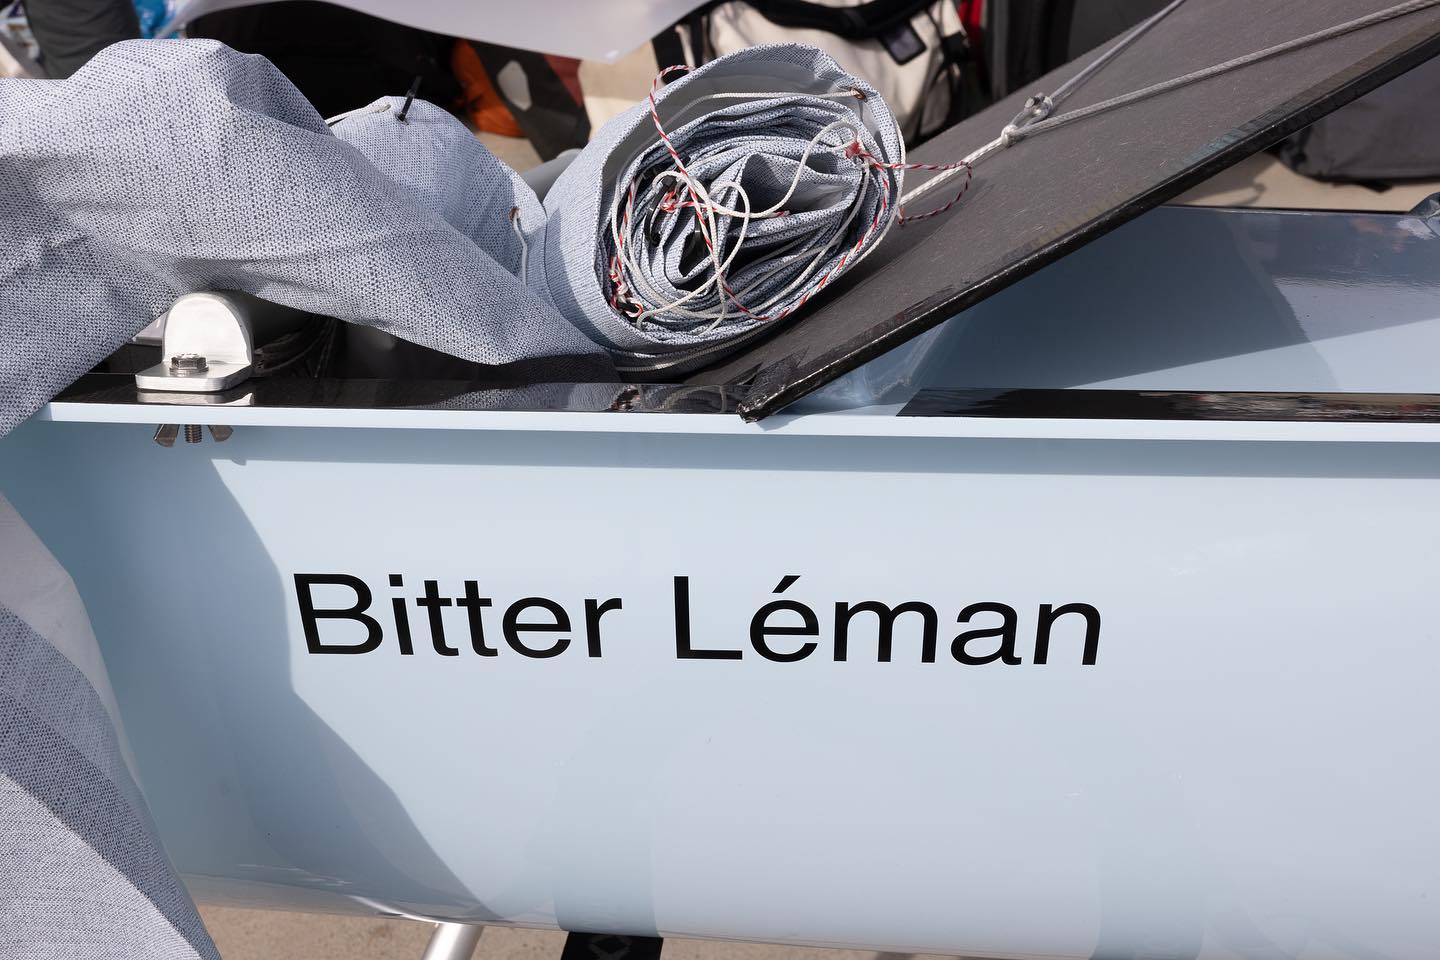 Le bon nom pour le bateau - Bitter Léman